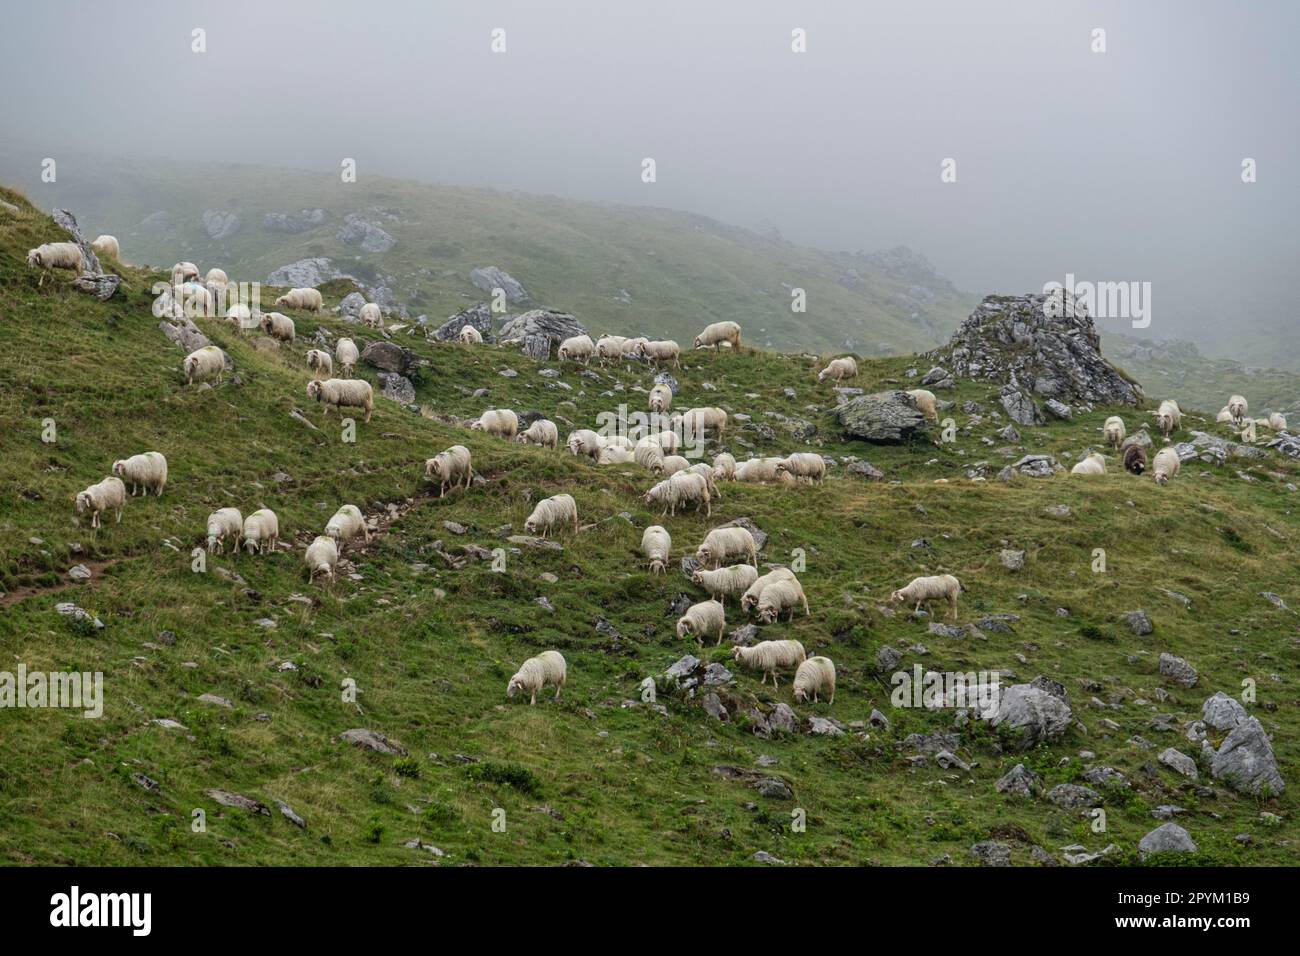 rebaño de ovejas cerca de la cabaña de Anaye, alta ruta pirenaica, región de Aquitania, departamento de Pirineos Atlánticos, Francia Stock Photo